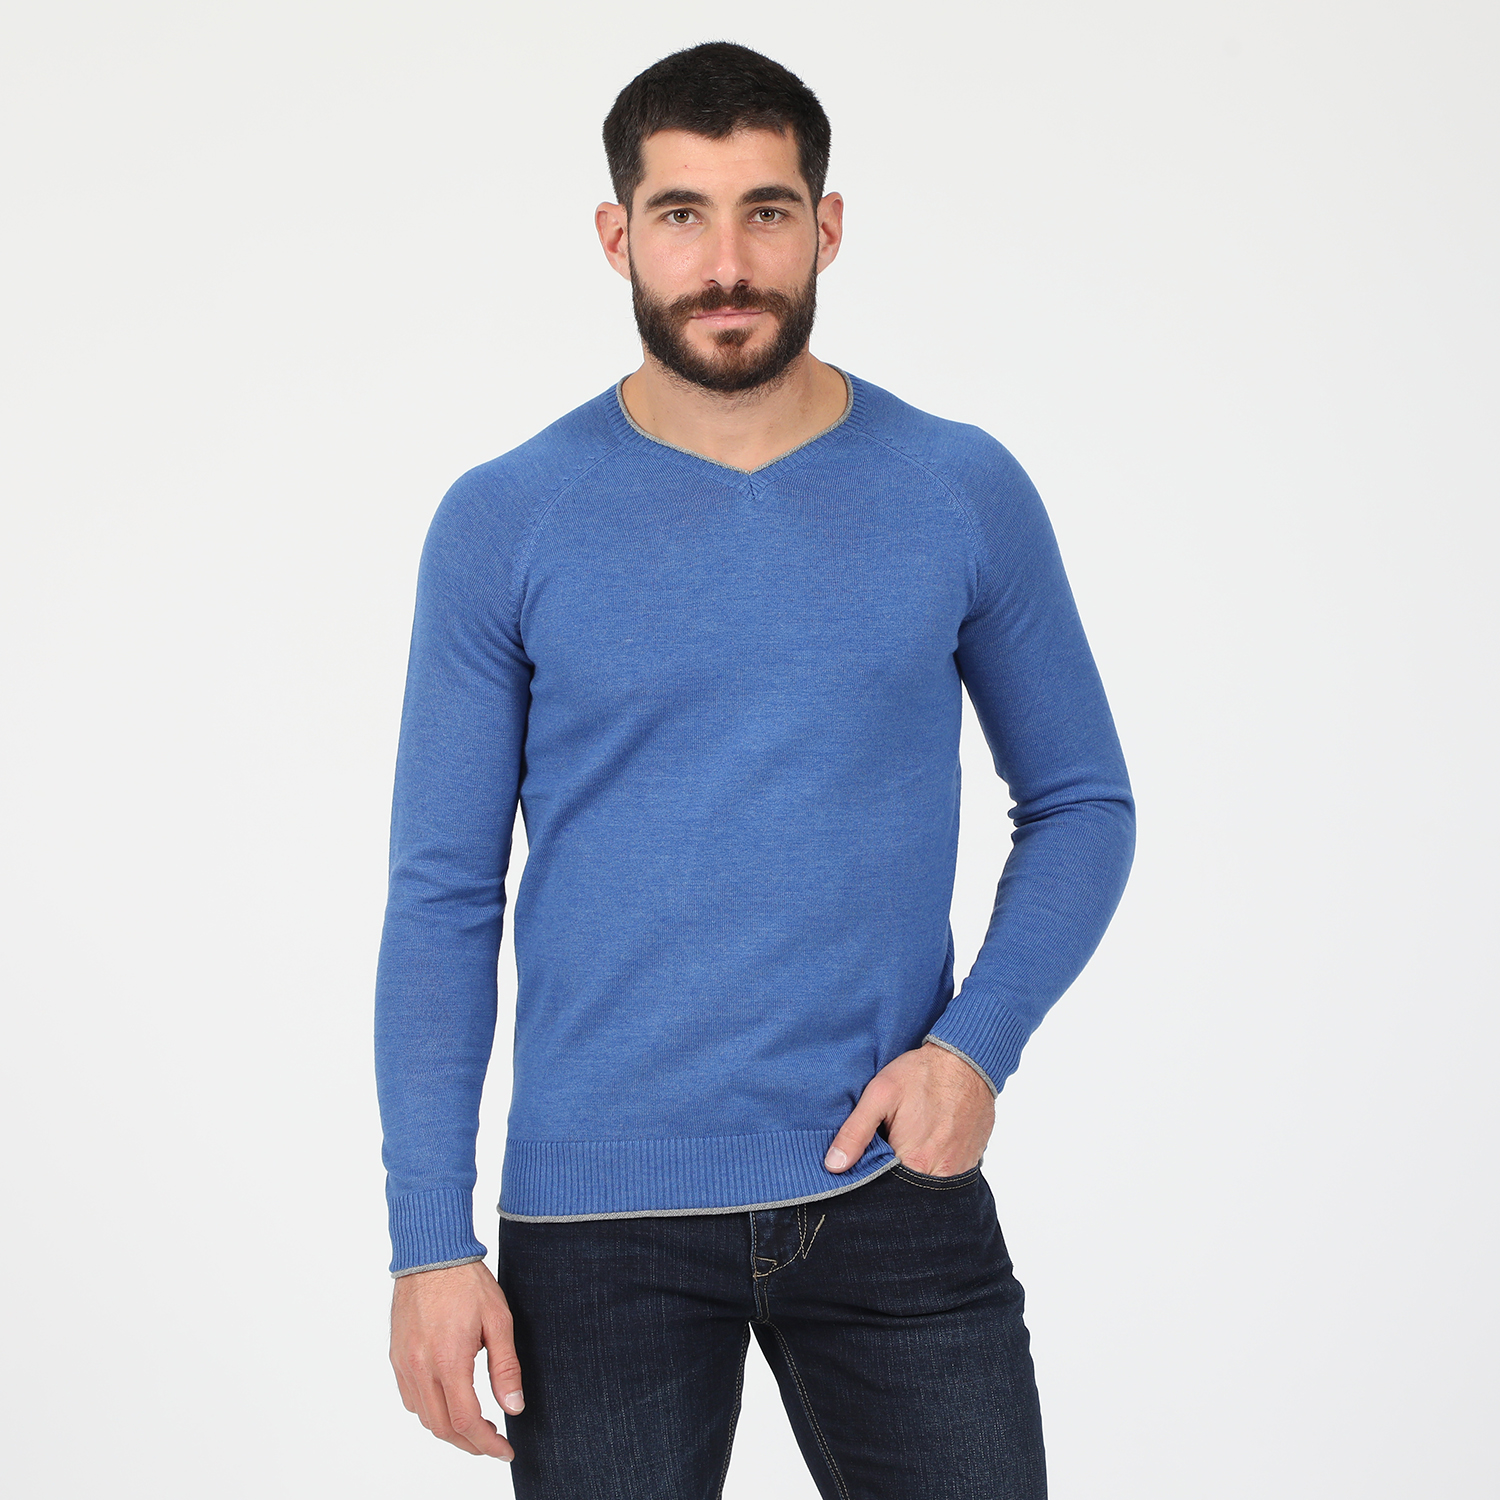 Ανδρικά/Ρούχα/Πλεκτά-Ζακέτες/Πουλόβερ MARTIN & CO - Ανδρική πλεκτή μπλούζα MARTIN & CO μπλε